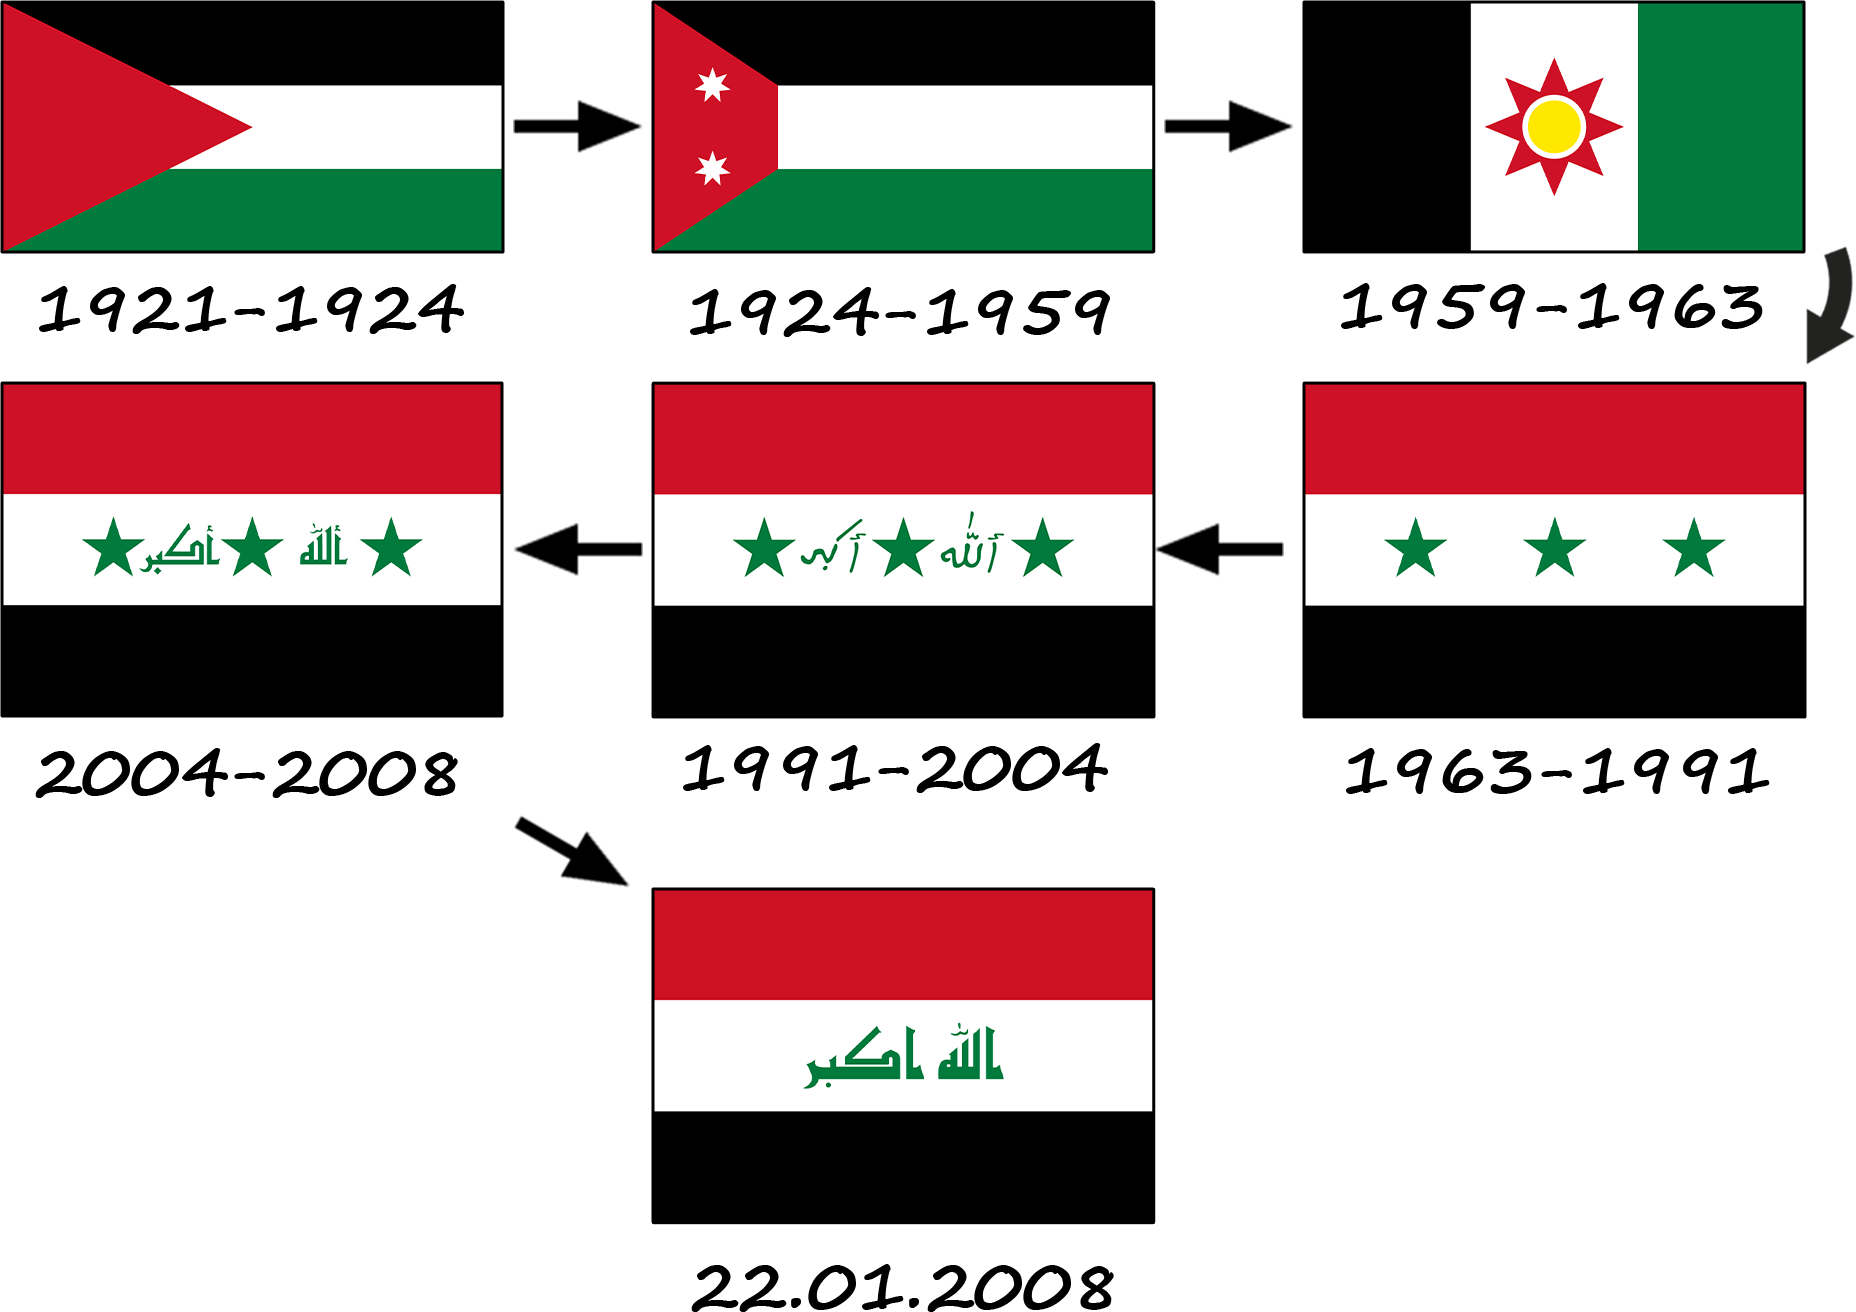 Comment le drapeau irakien a-t-il évolué ? L'histoire du drapeau